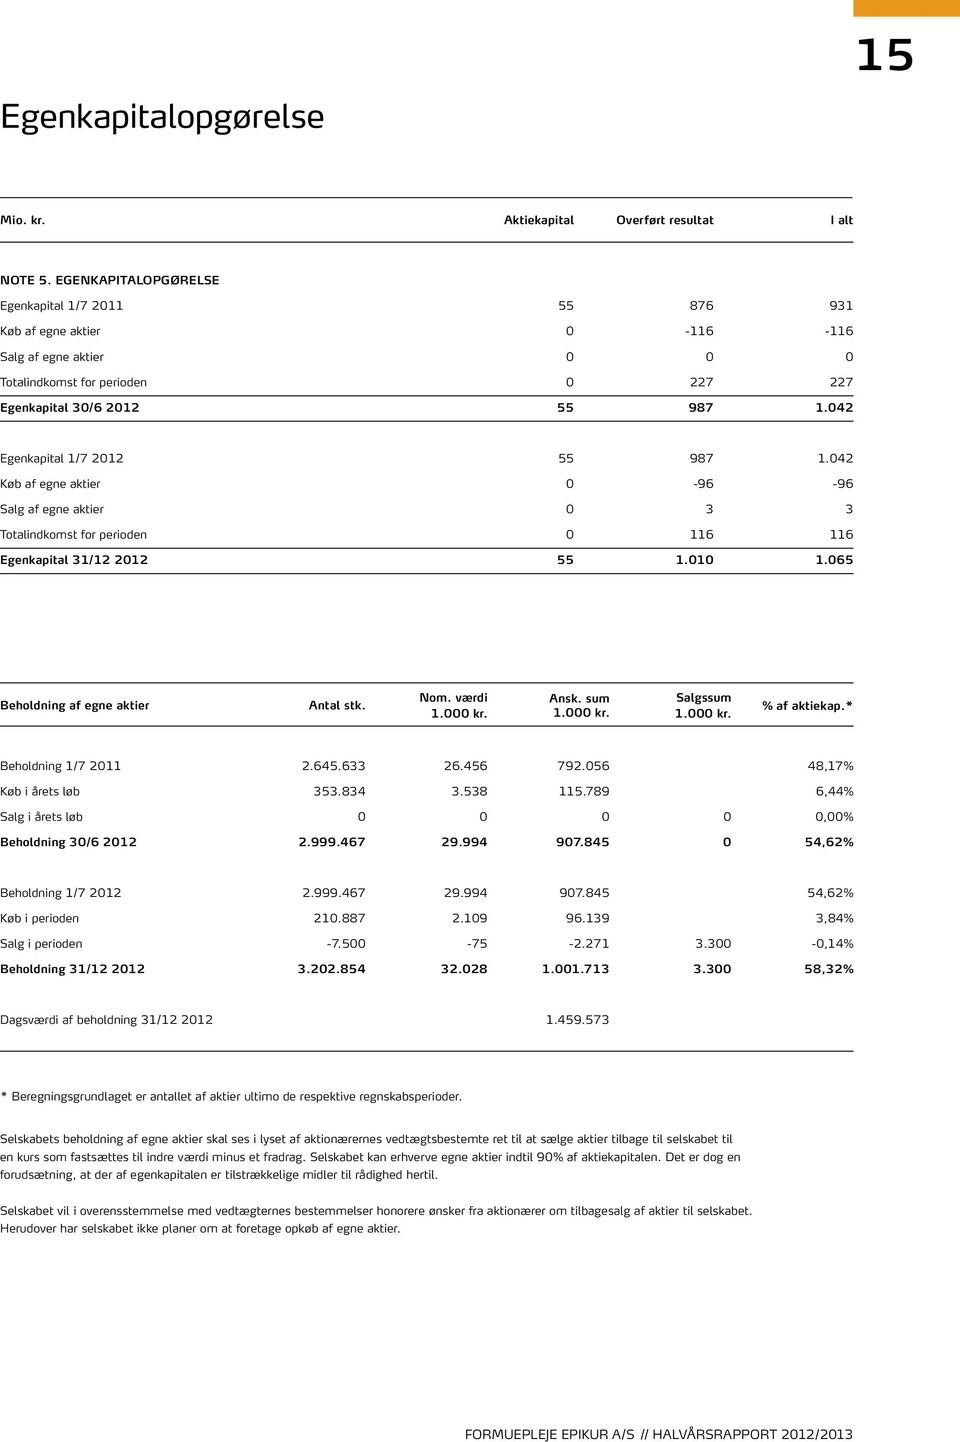 042 Egenkapital 1/7 2012 55 987 1.042 Køb af egne aktier 0-96 -96 Salg af egne aktier 0 3 3 Totalindkomst for perioden 0 116 116 Egenkapital 31/12 2012 55 1.010 1.